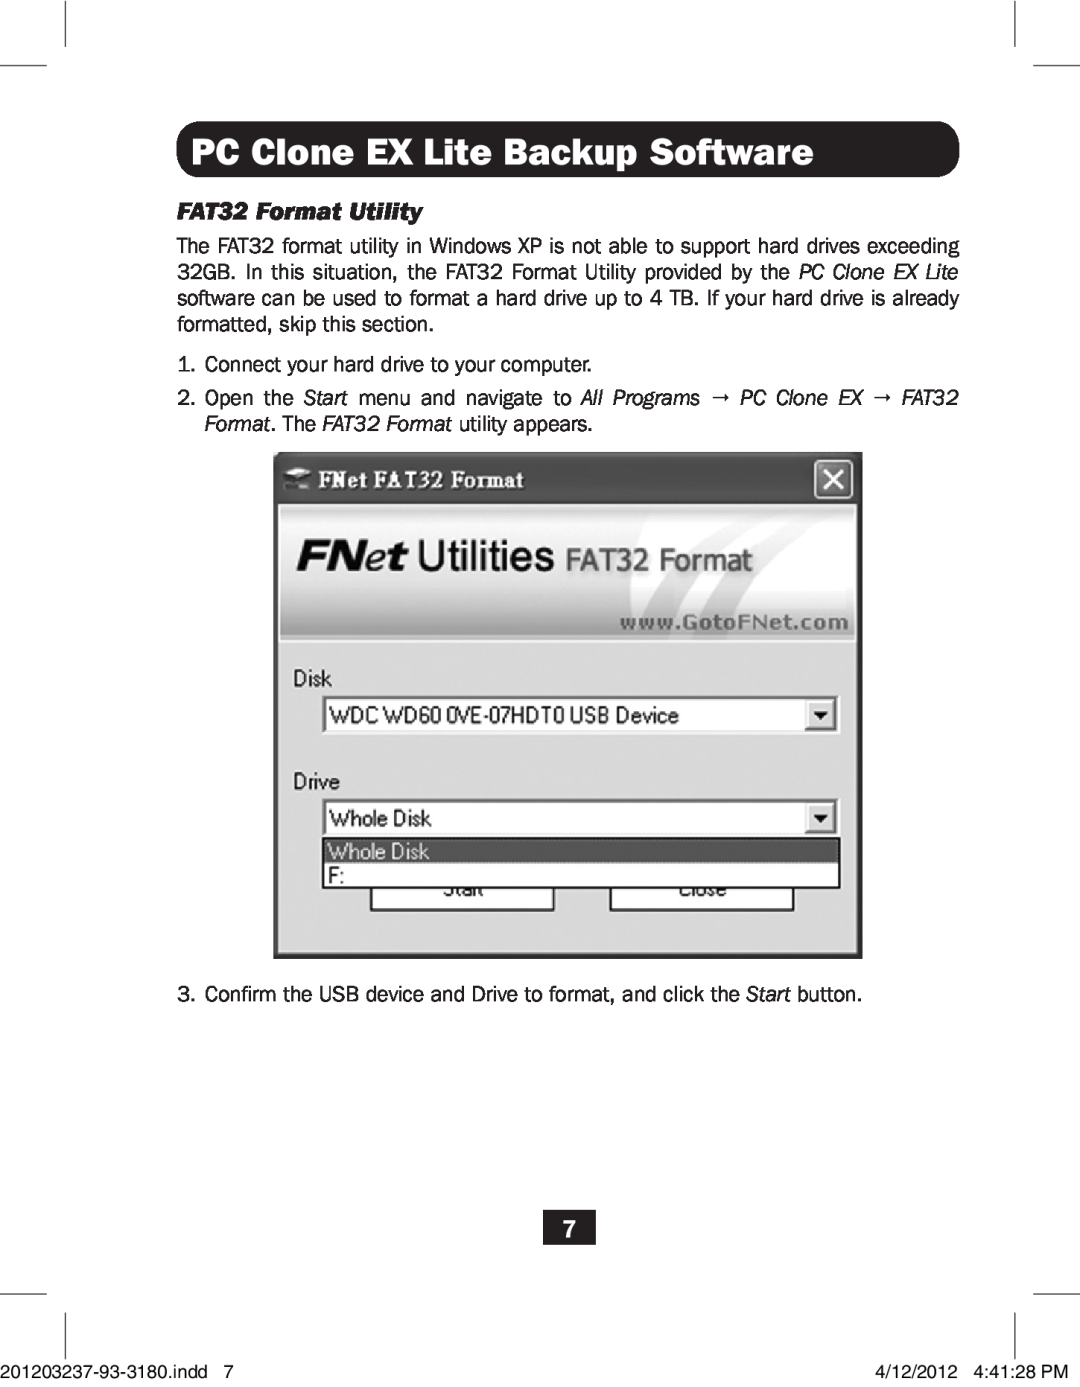 Tripp Lite U238-000-1 owner manual FAT32 Format Utility, PC Clone EX Lite Backup Software 